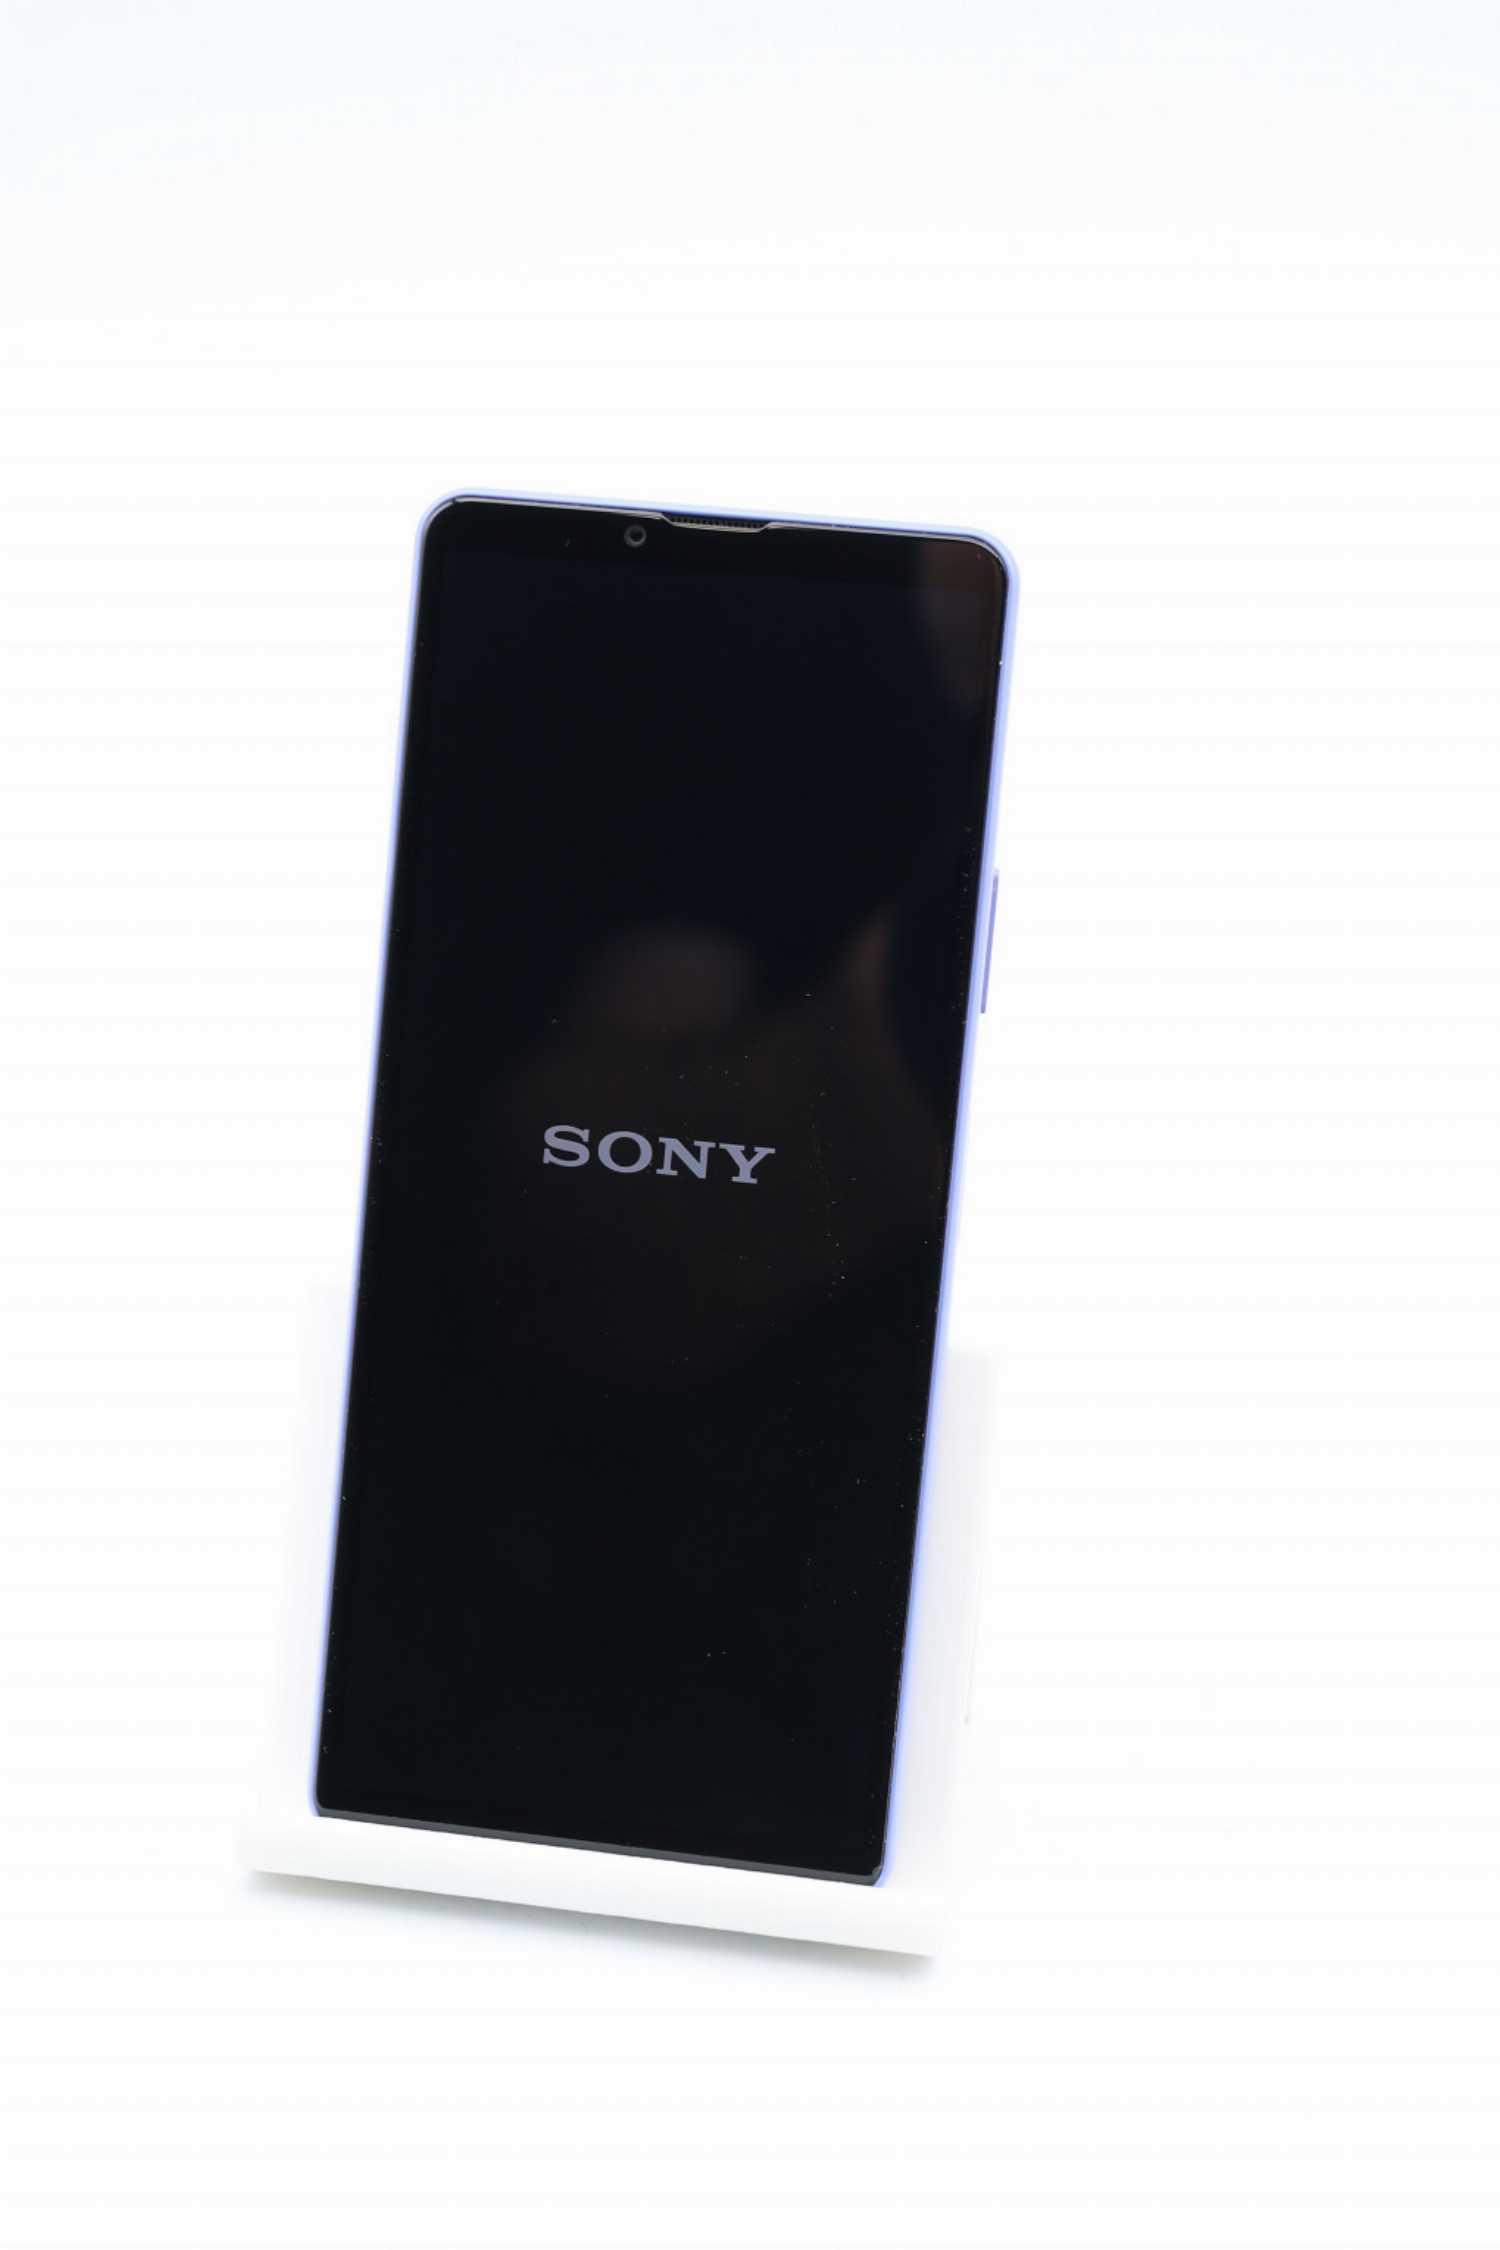 lila) Sony Zoll, Xperia Octa-Core, 10 lavender tecgarden 5.000-mAh, MP, 12 IV 5G (6 | Smartphone 128GB